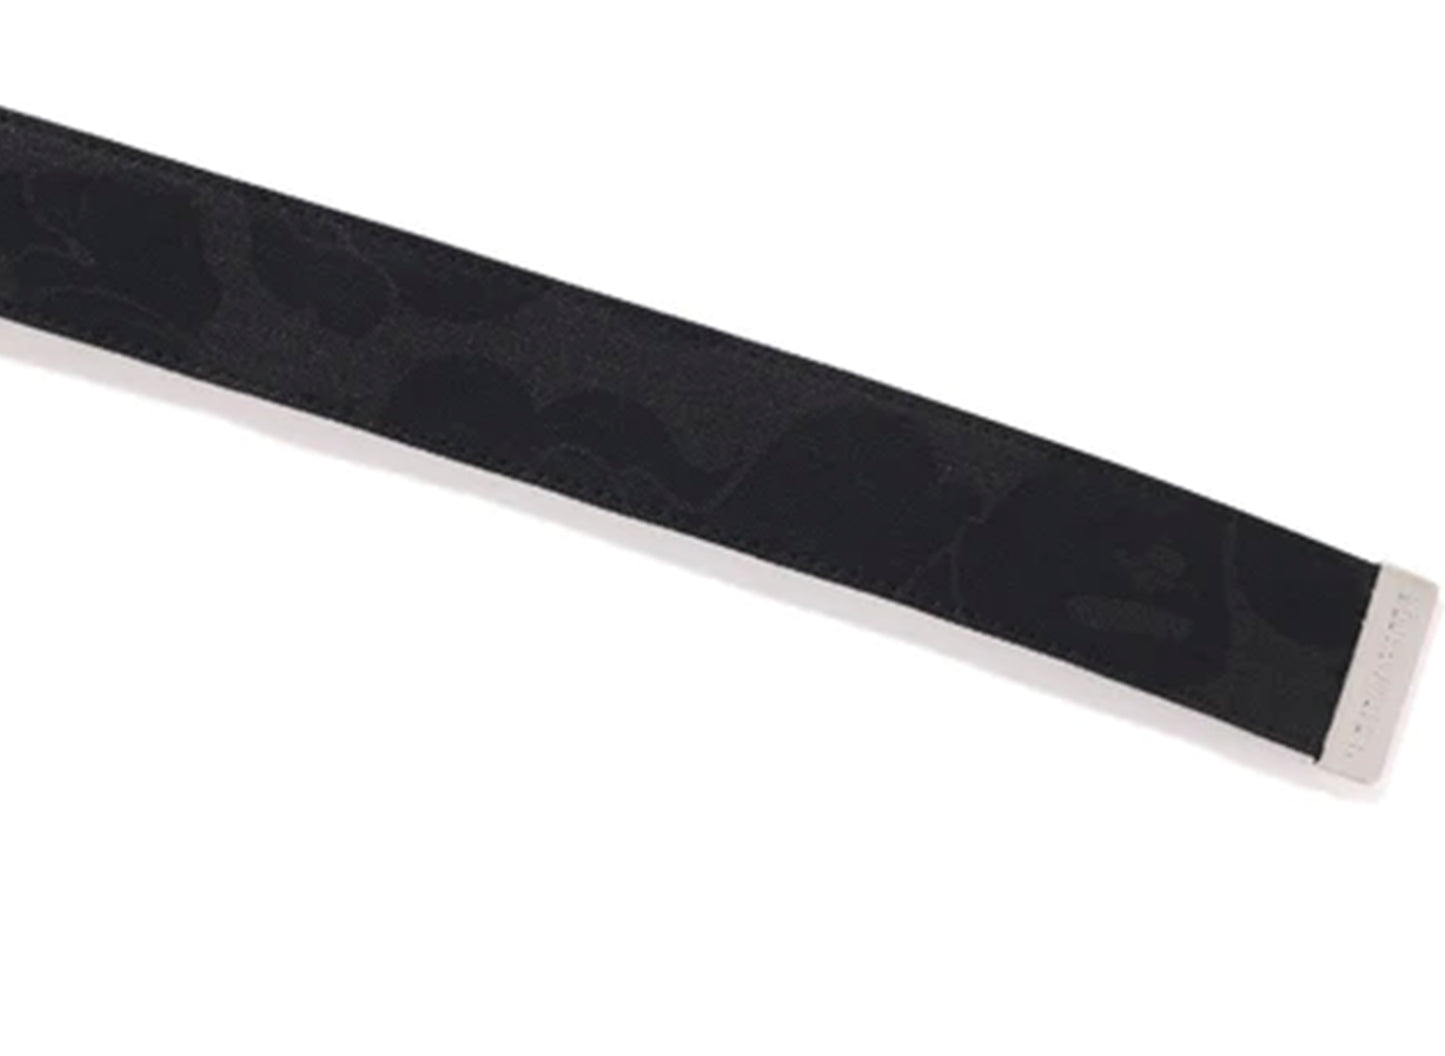 A Bathing Ape Tonal Solid Camo Belt in Black xld